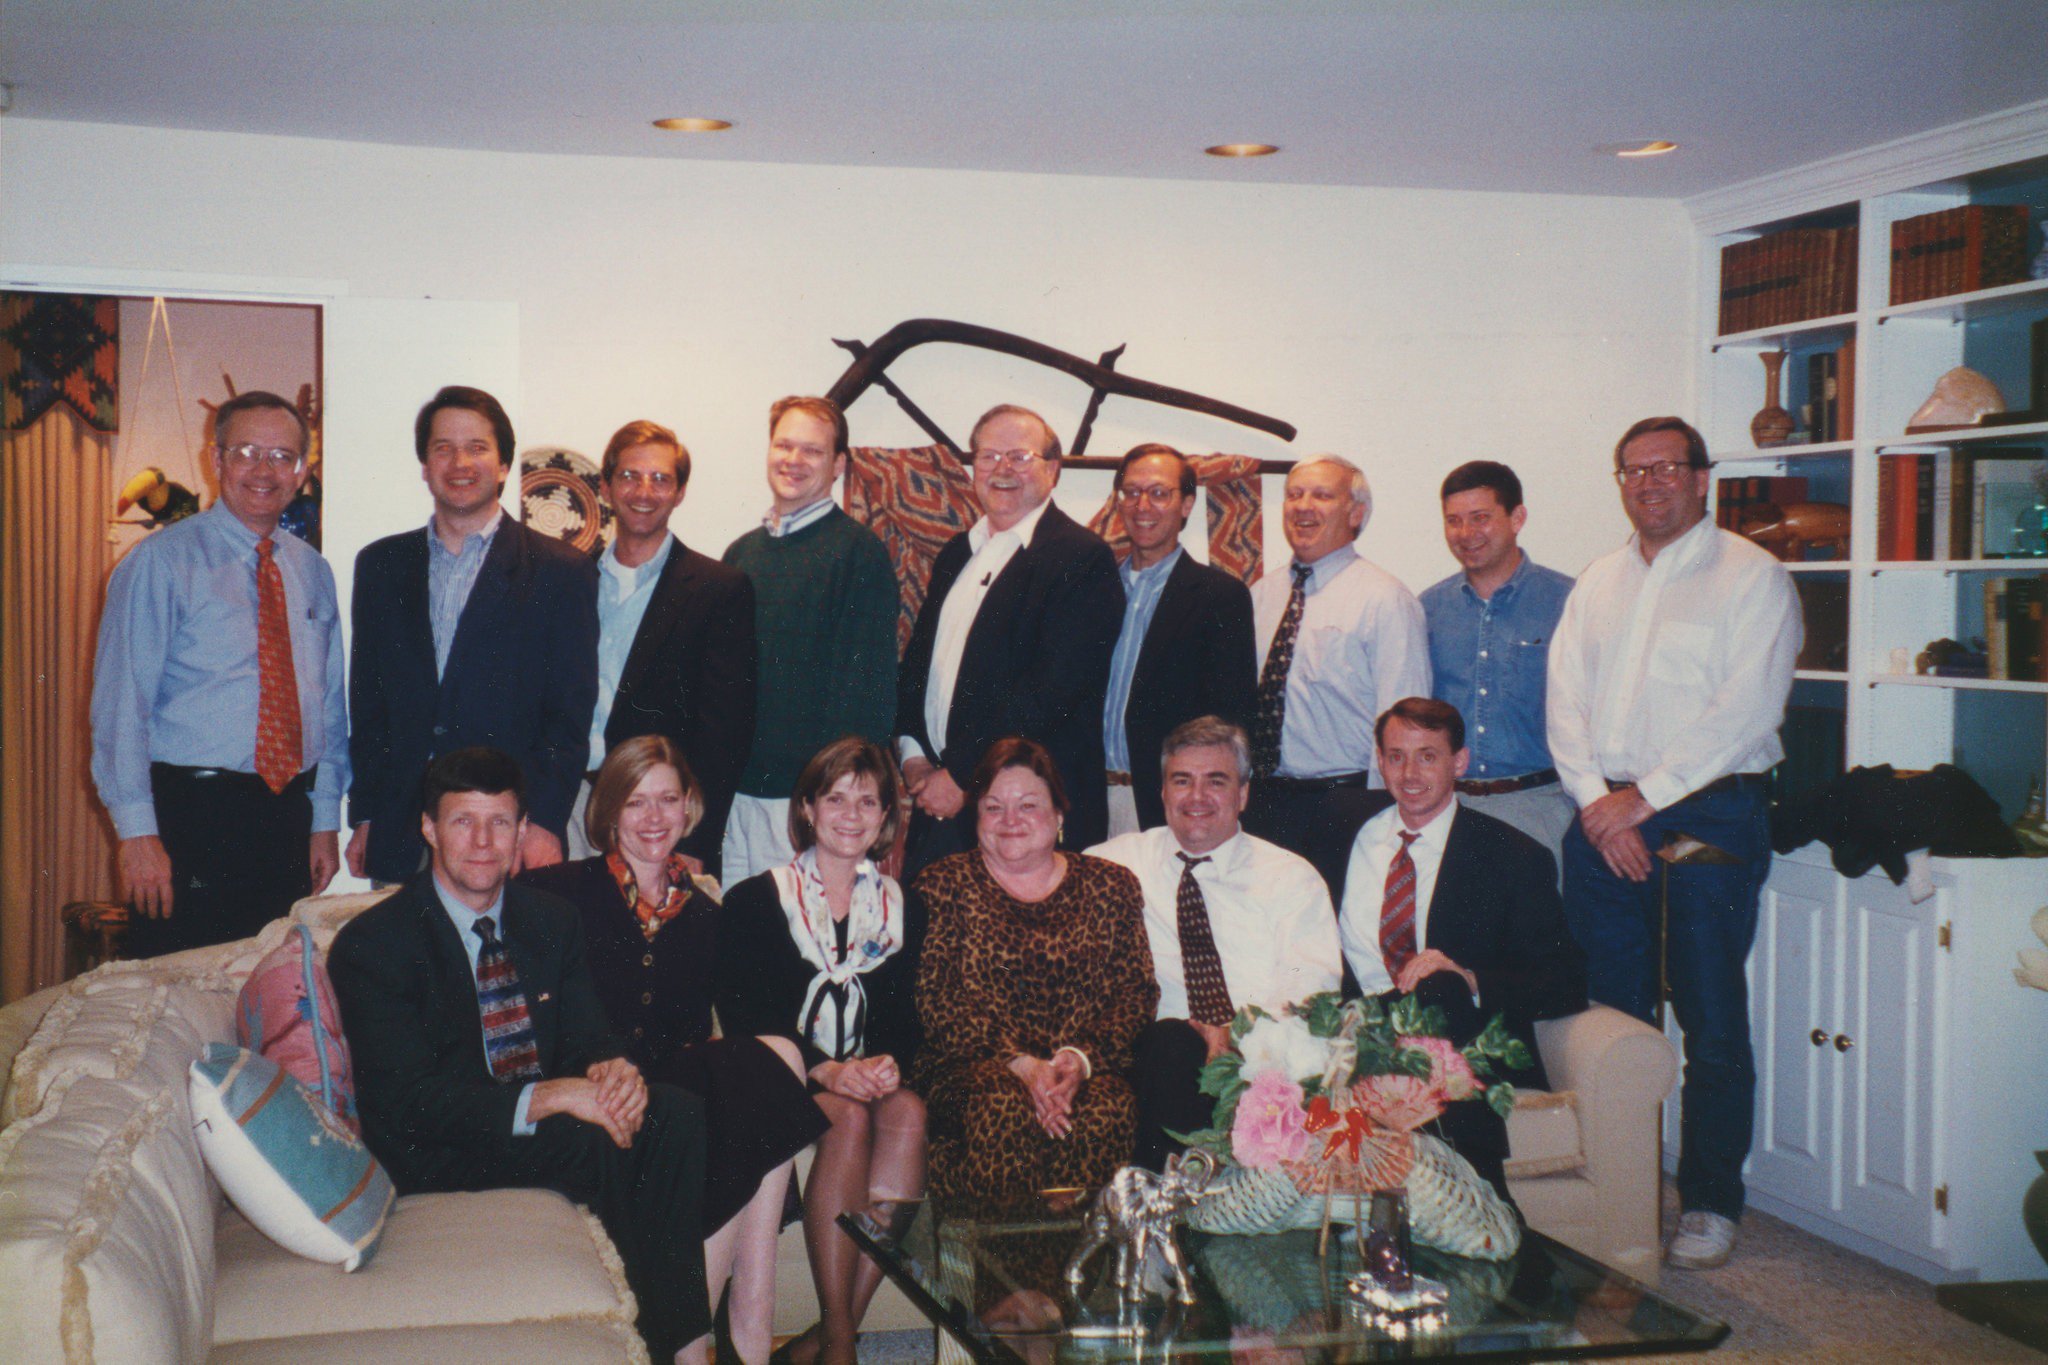 Standing: On the far left, Ken Starr standing next to Brett Kavanaugh. Sitting: On the far right, Rod Rosenstein. Photograph courtesy of the White House.